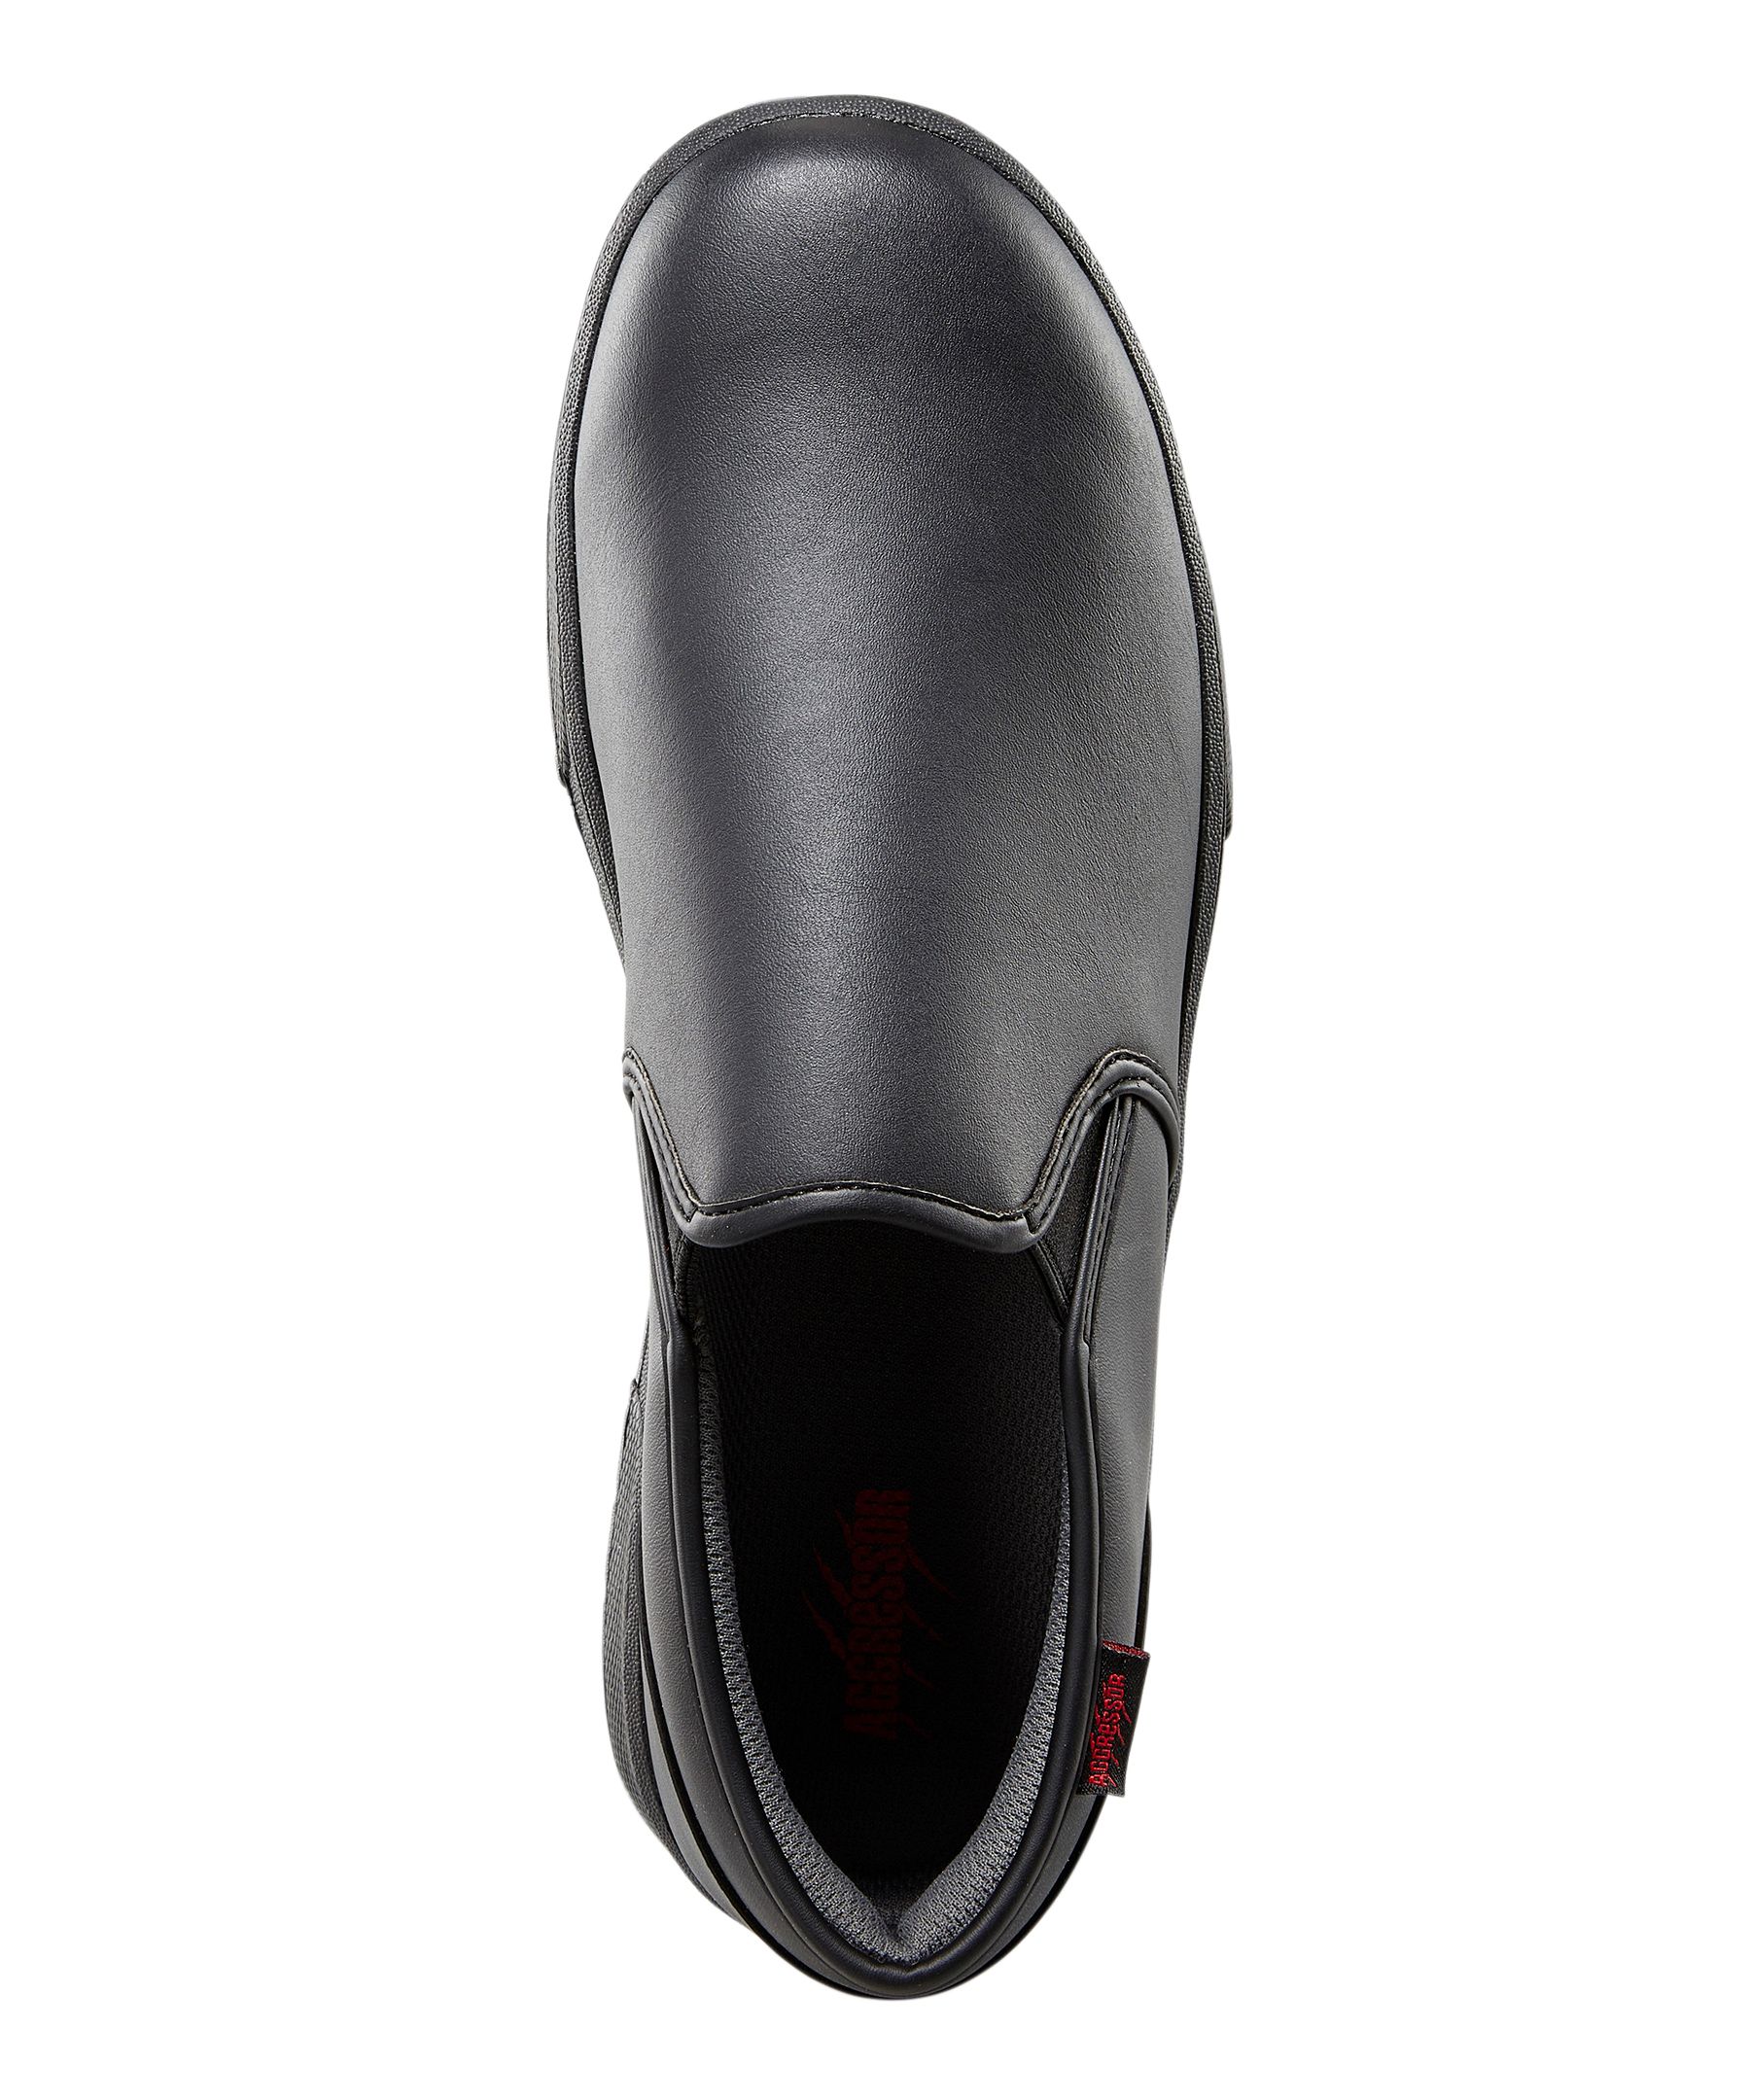 SkidBuster Men's Slip-On Slip Resistant Shoe - S5072